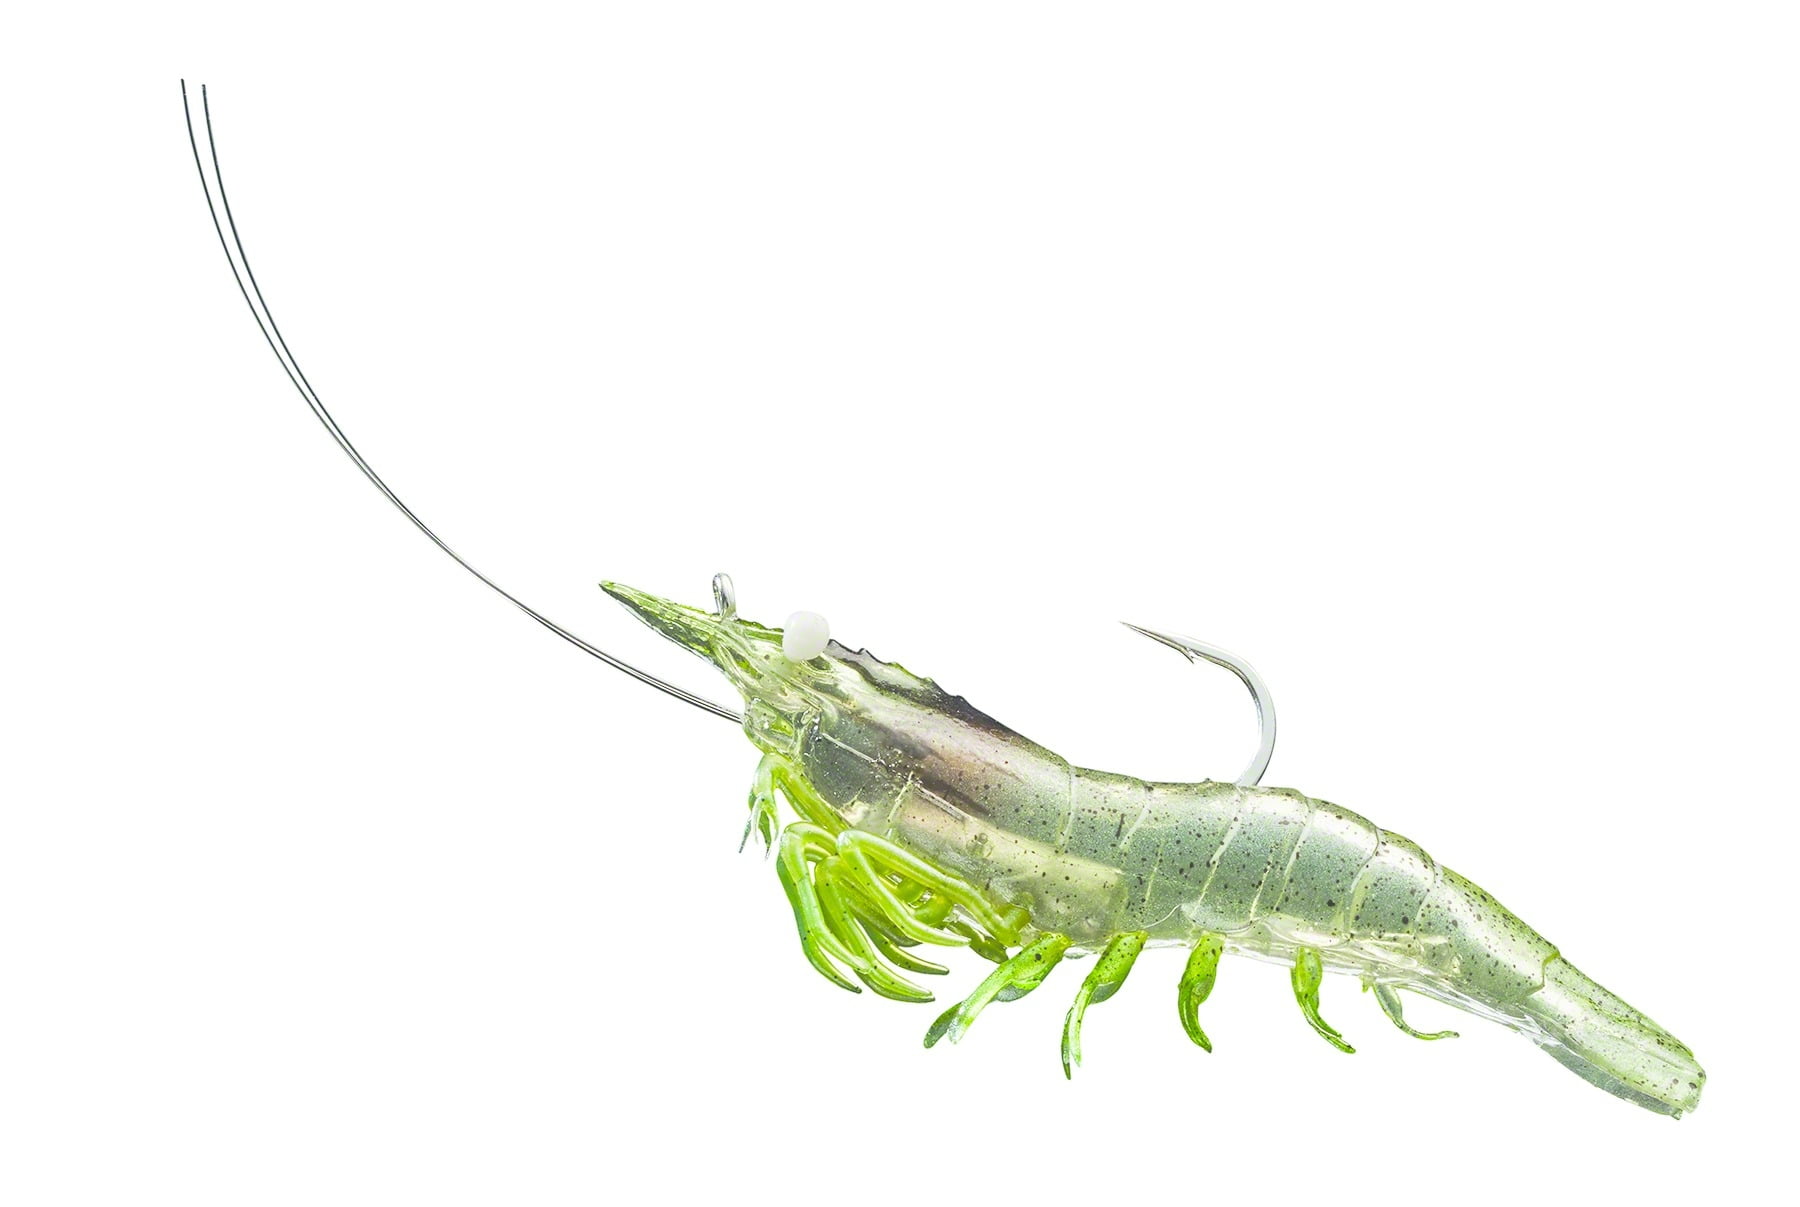 LiveTarget Lures Rigged Shrimp Soft Plastic